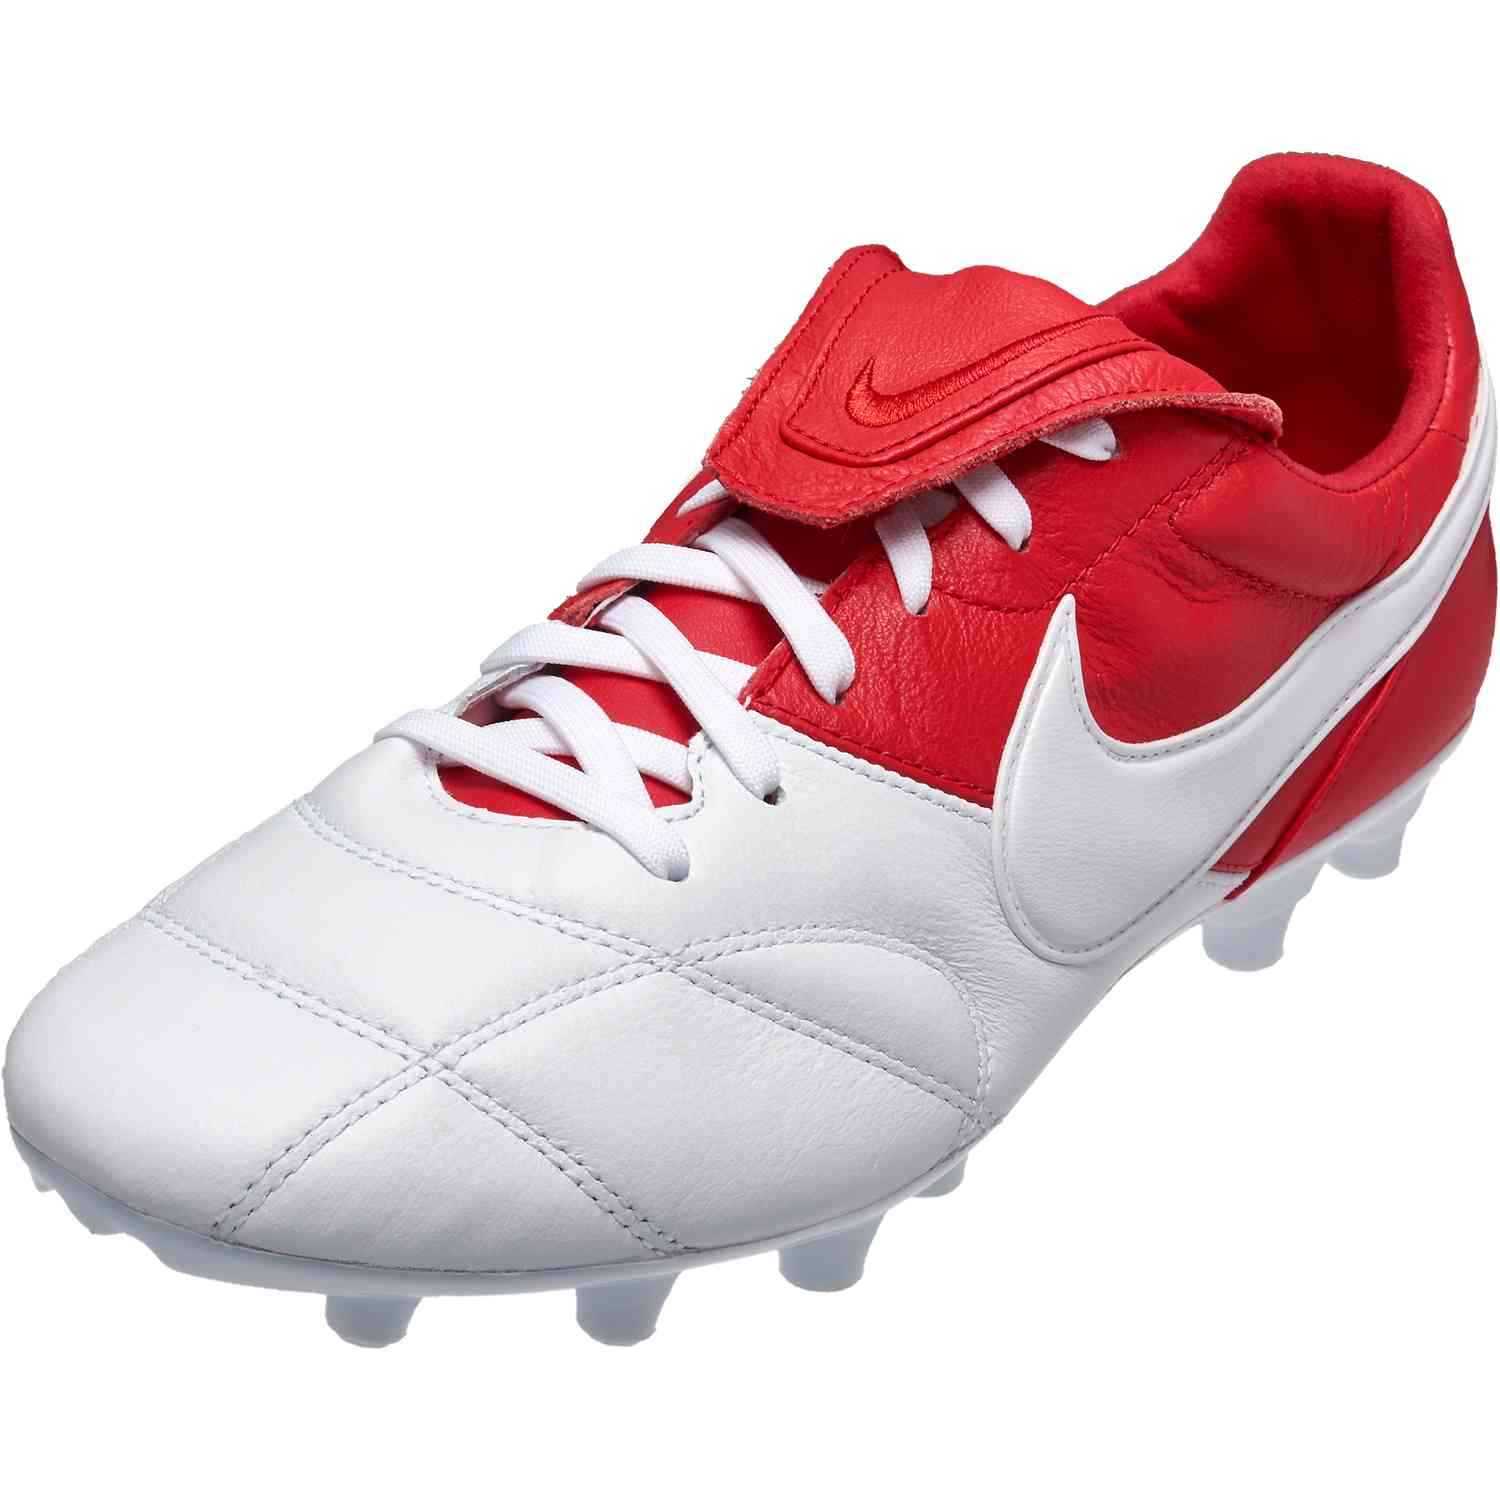 Nike Premier II FG - Red SoccerPro